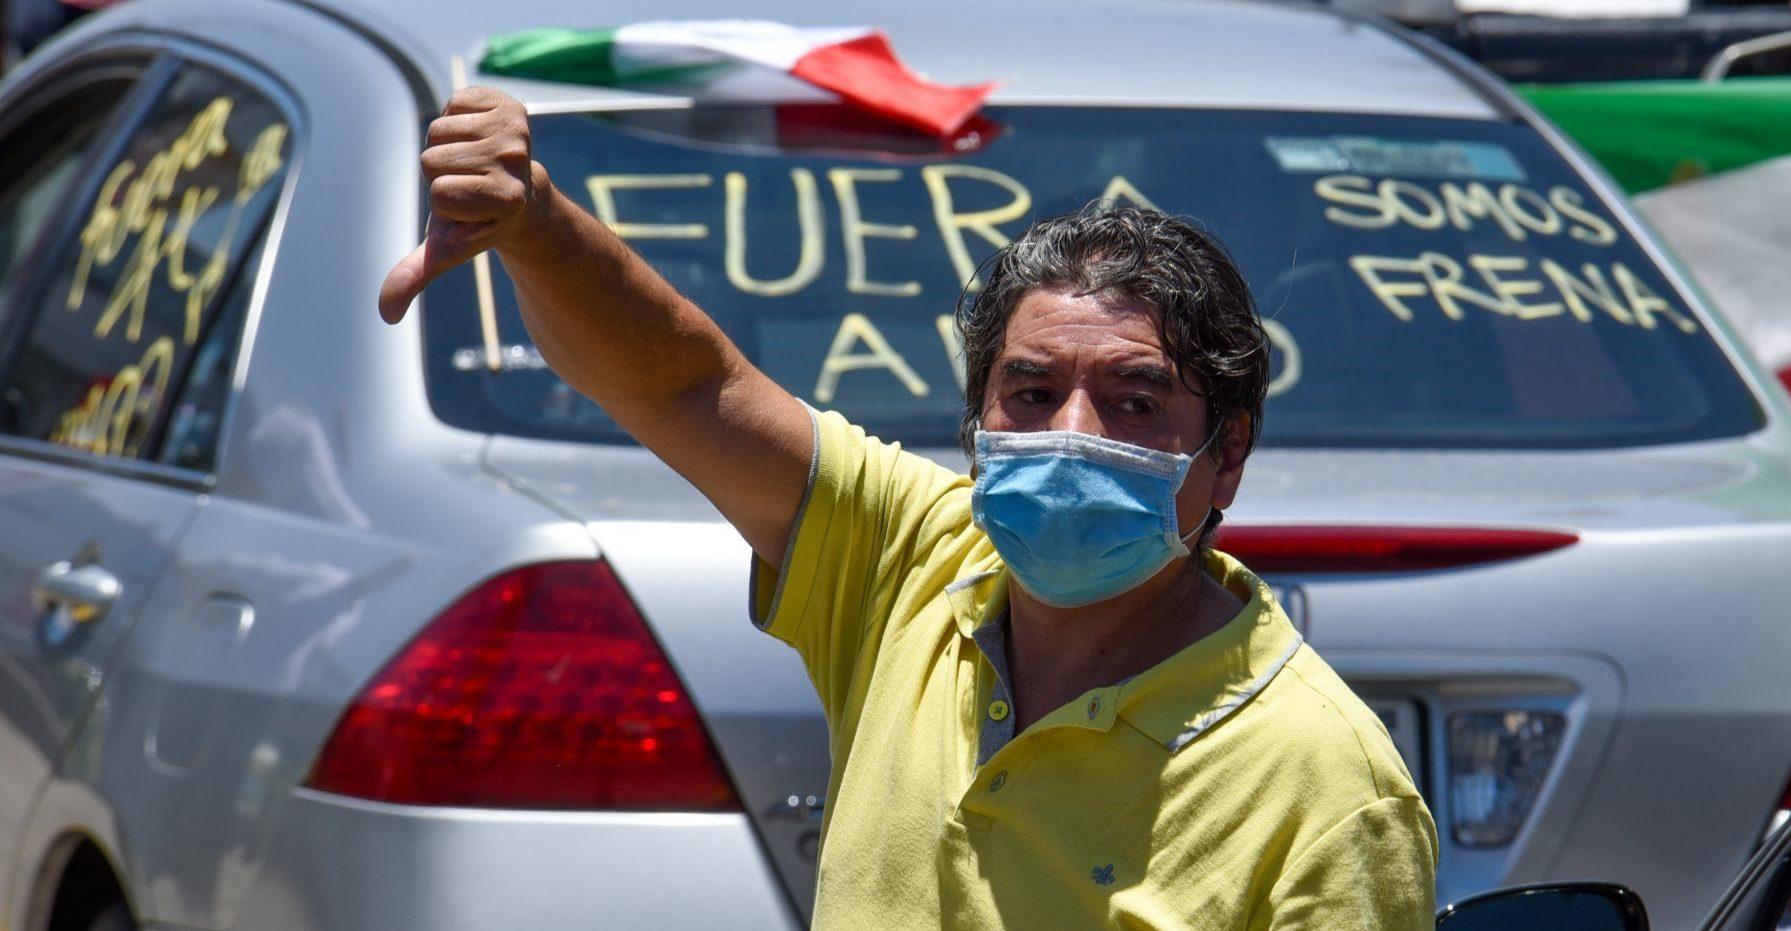 Con manifestaciones a favor y en contra reciben a AMLO en su visita a Jalisco